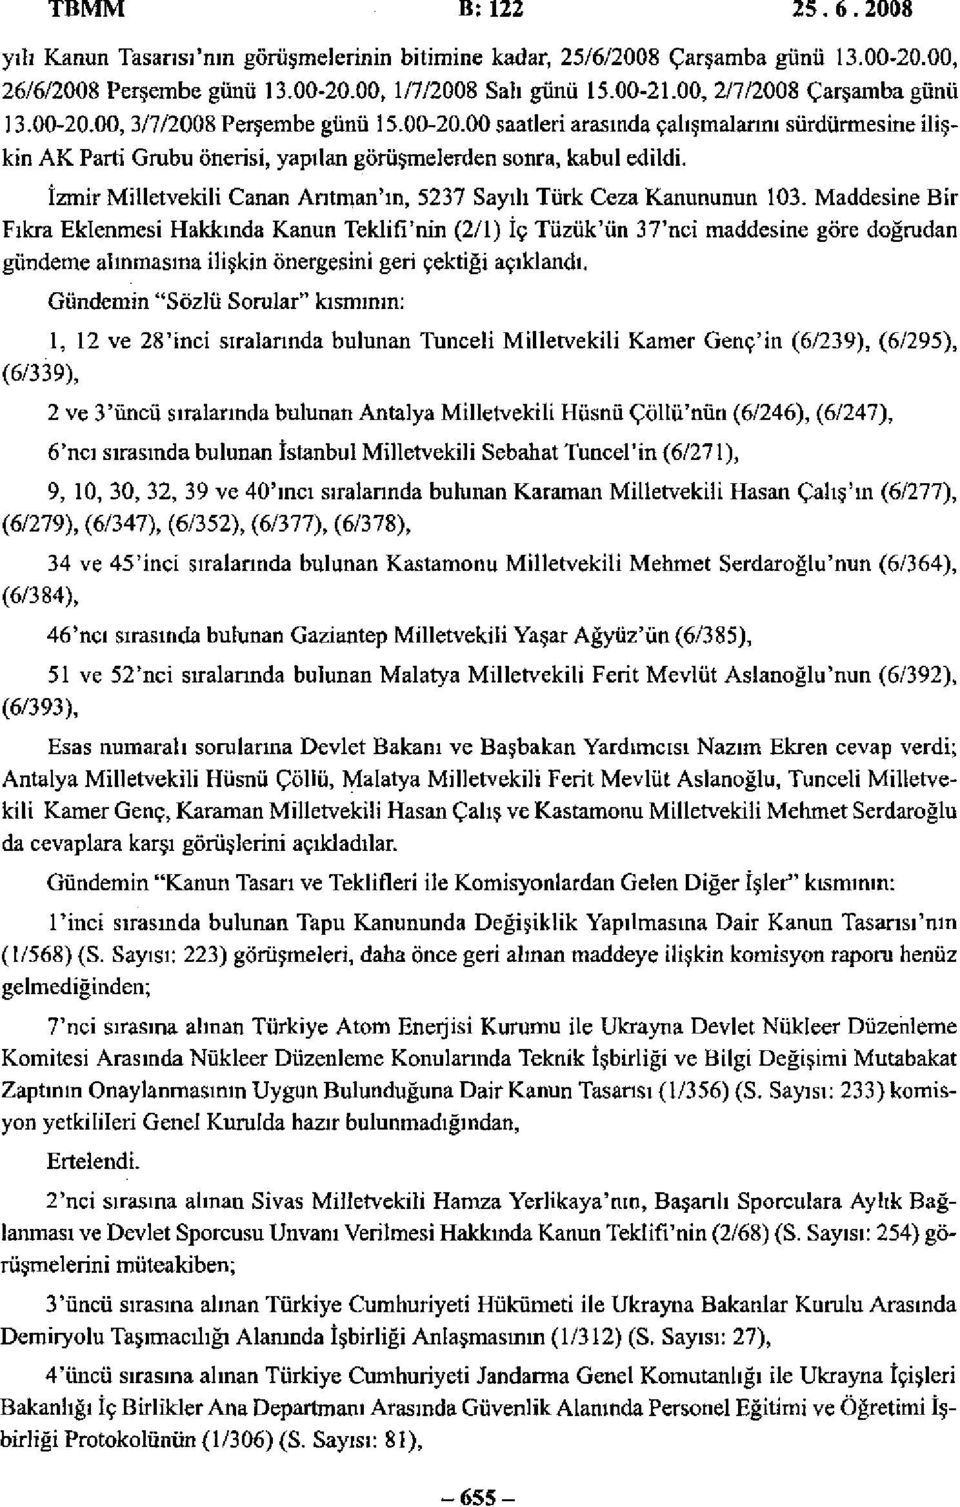 İzmir Milletvekili Canan Arıtman'ın, 5237 Sayılı Türk Ceza Kanununun 103.